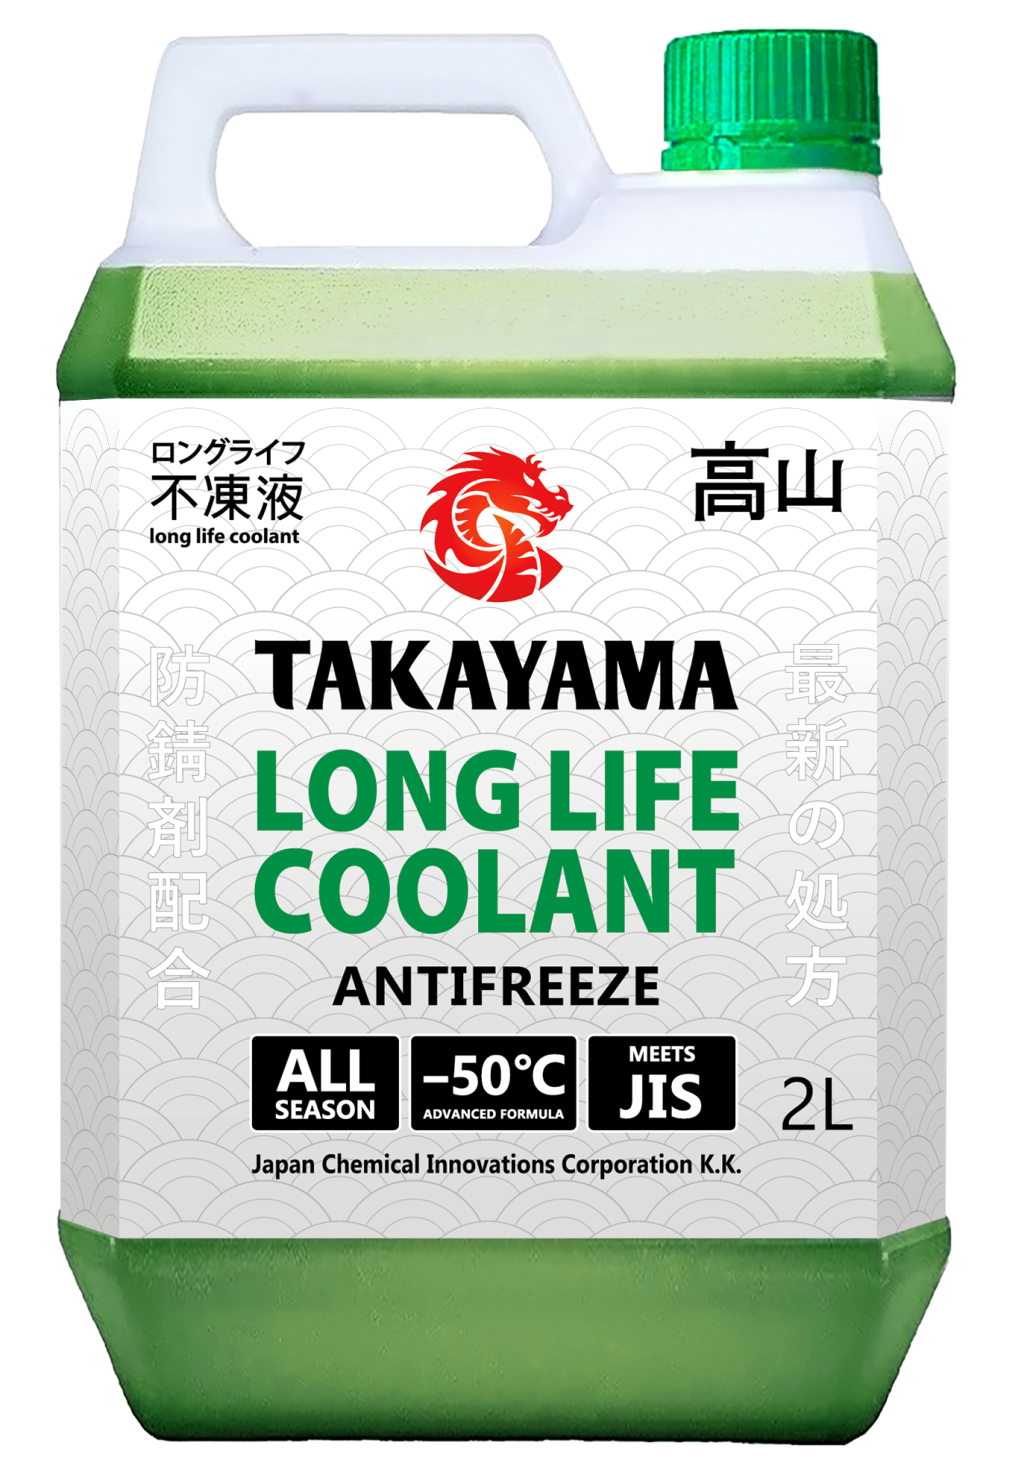 фото Антифриз takayama long life coolant green (-50) зеленый 2 л